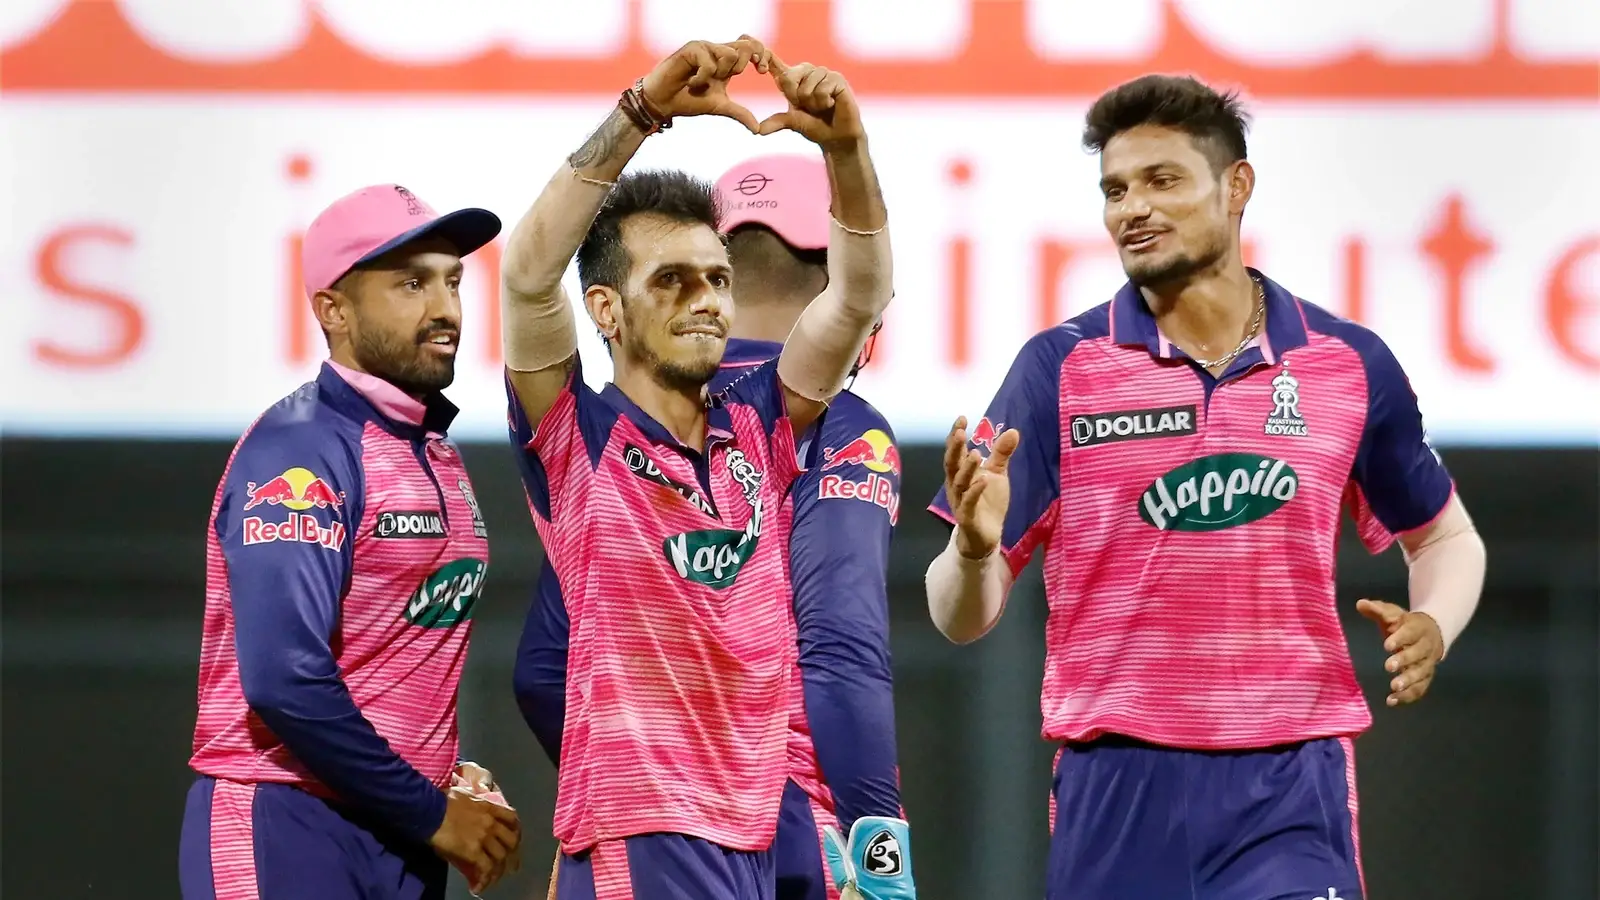  हेटमायर, गेंदबाजों की मदद से राजस्थान रॉयल्स ने लखनऊ सुपर जायंट्स को तीन रनों से हराया |  क्रिकेट
